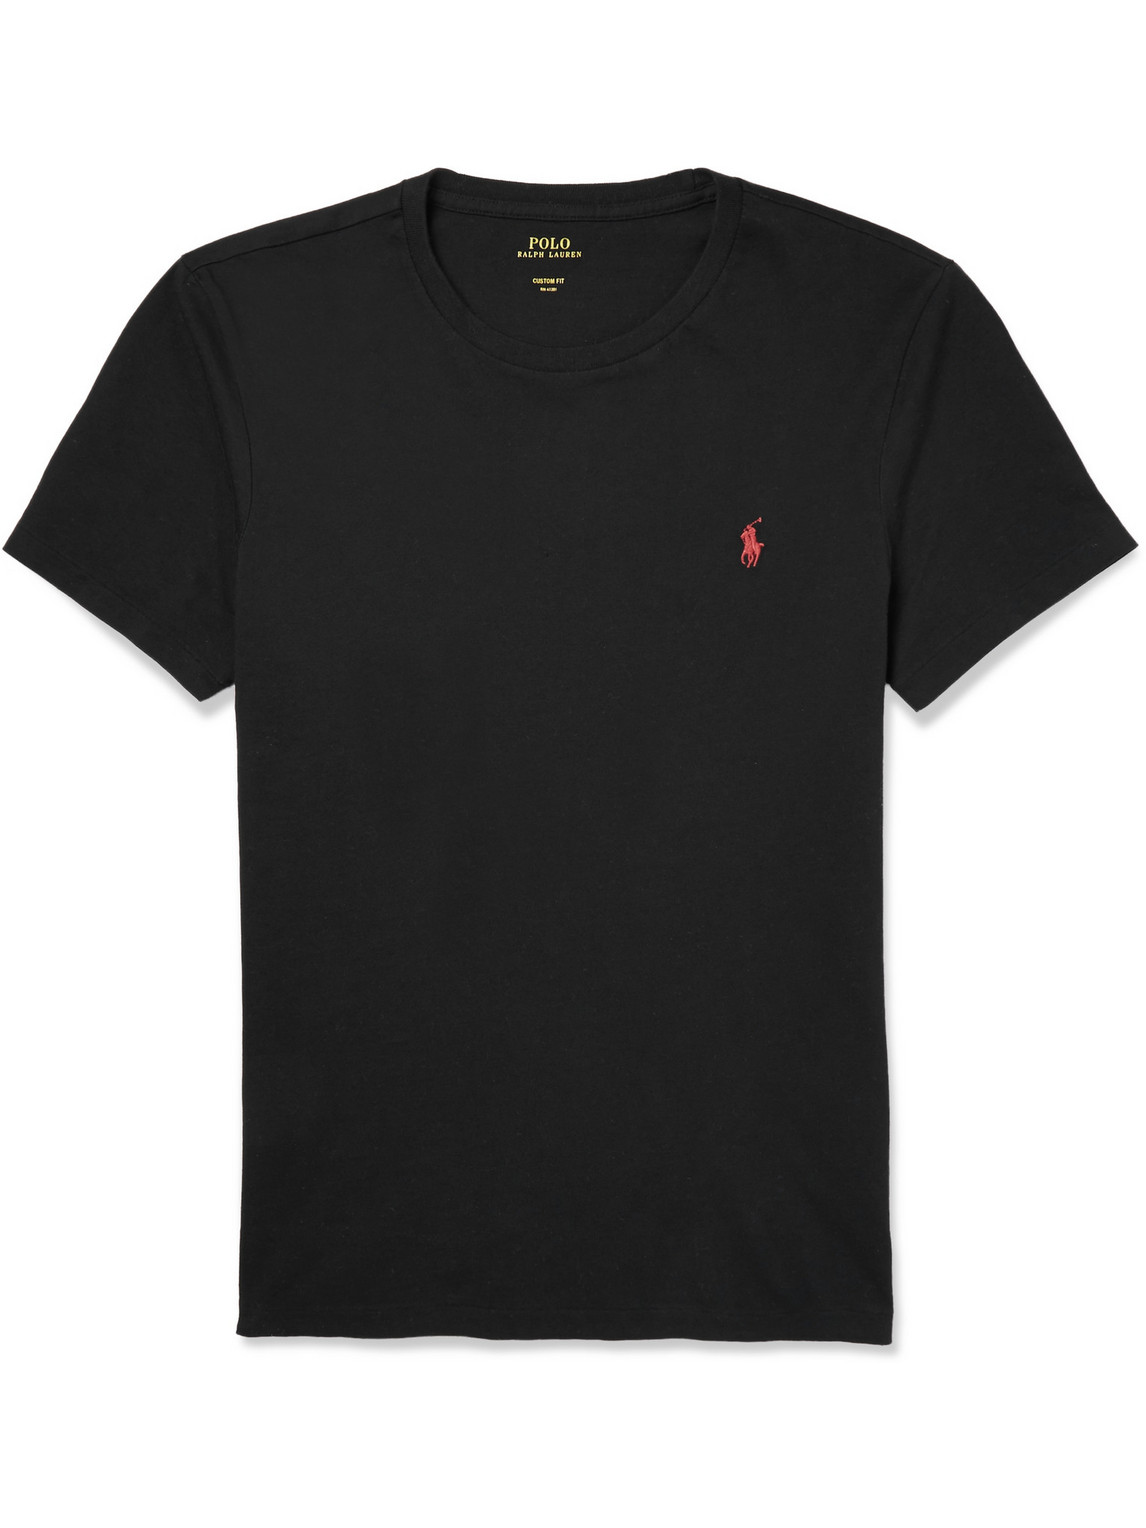 Polo Ralph Lauren - Slim-Fit Cotton T-Shirt - Men - Black - XXL for Men